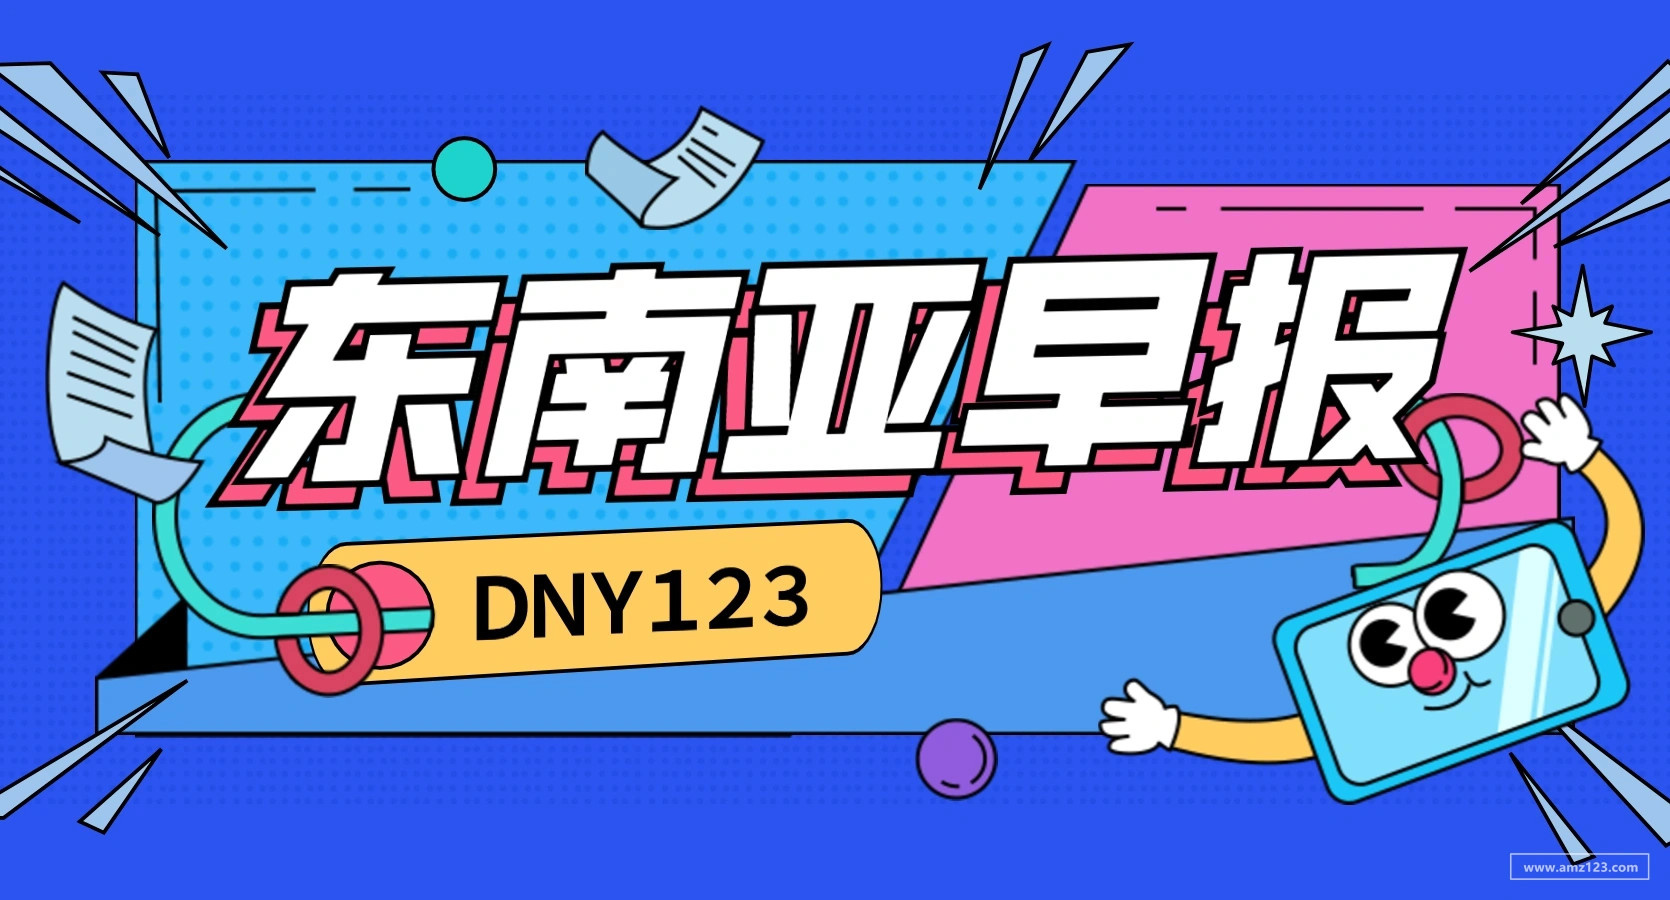 【DNY123跨境早报】Shopee巴西站点和印尼站点调整不同卖家类型上架商品数量限制，越南推出跨境企业申报纳税网站